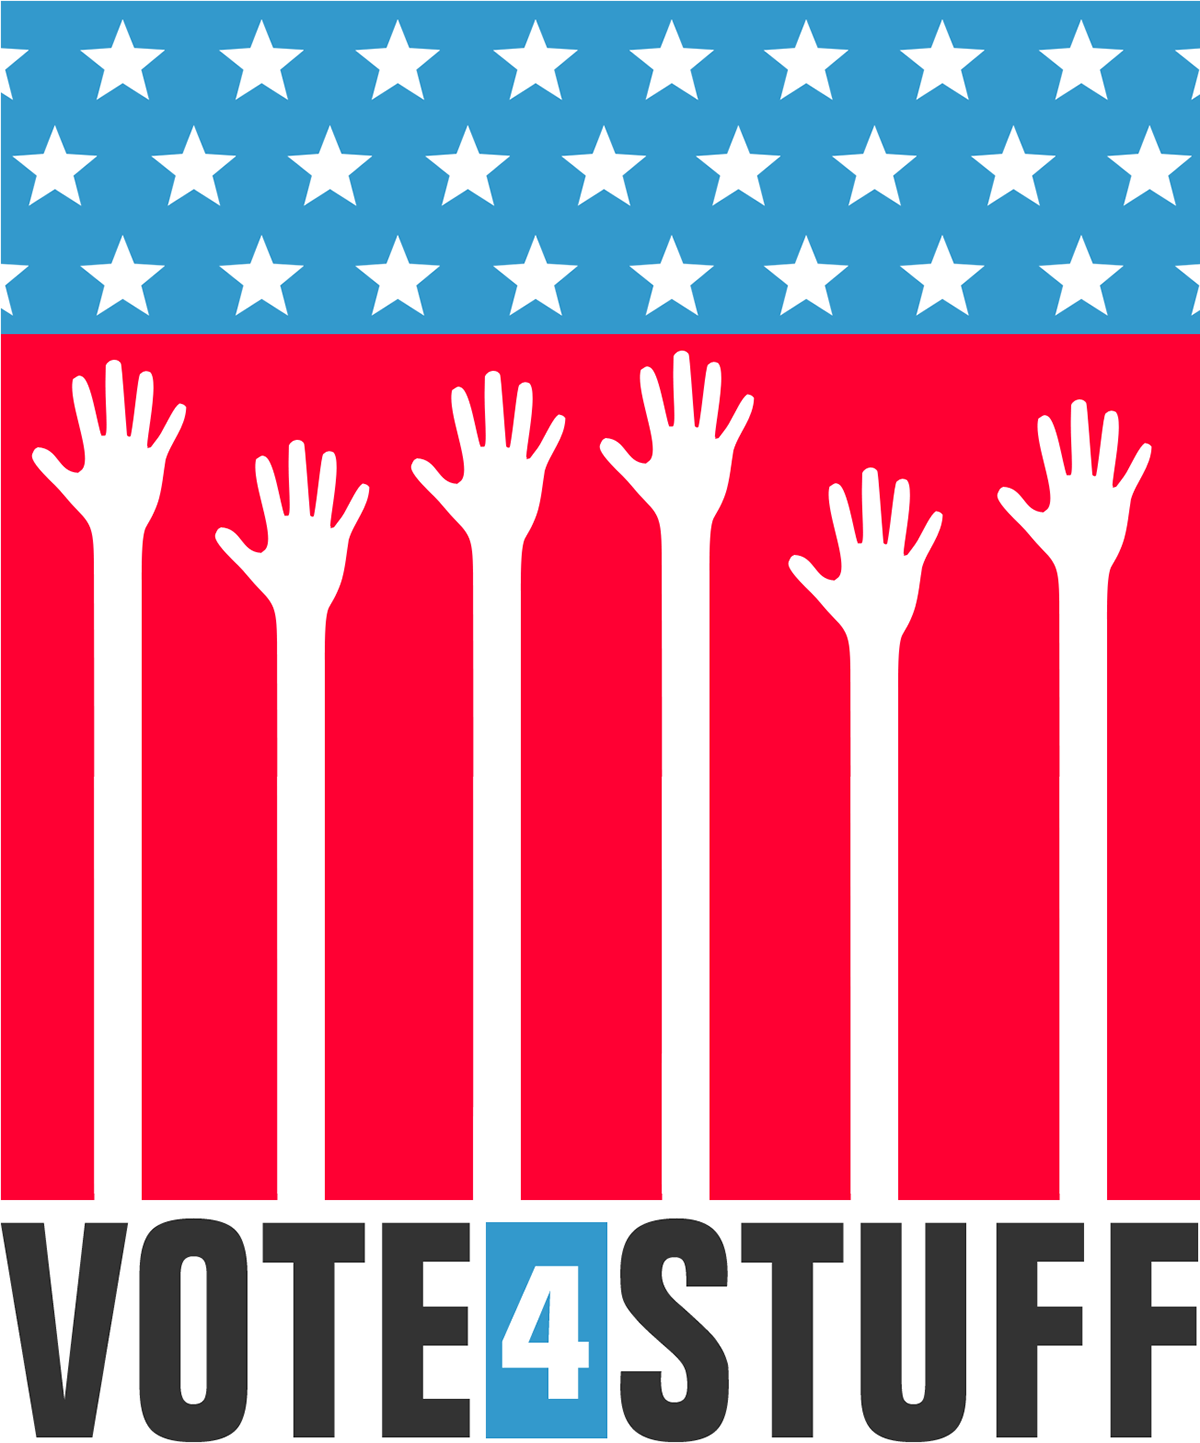 vote Election politics campaign logo brand identity